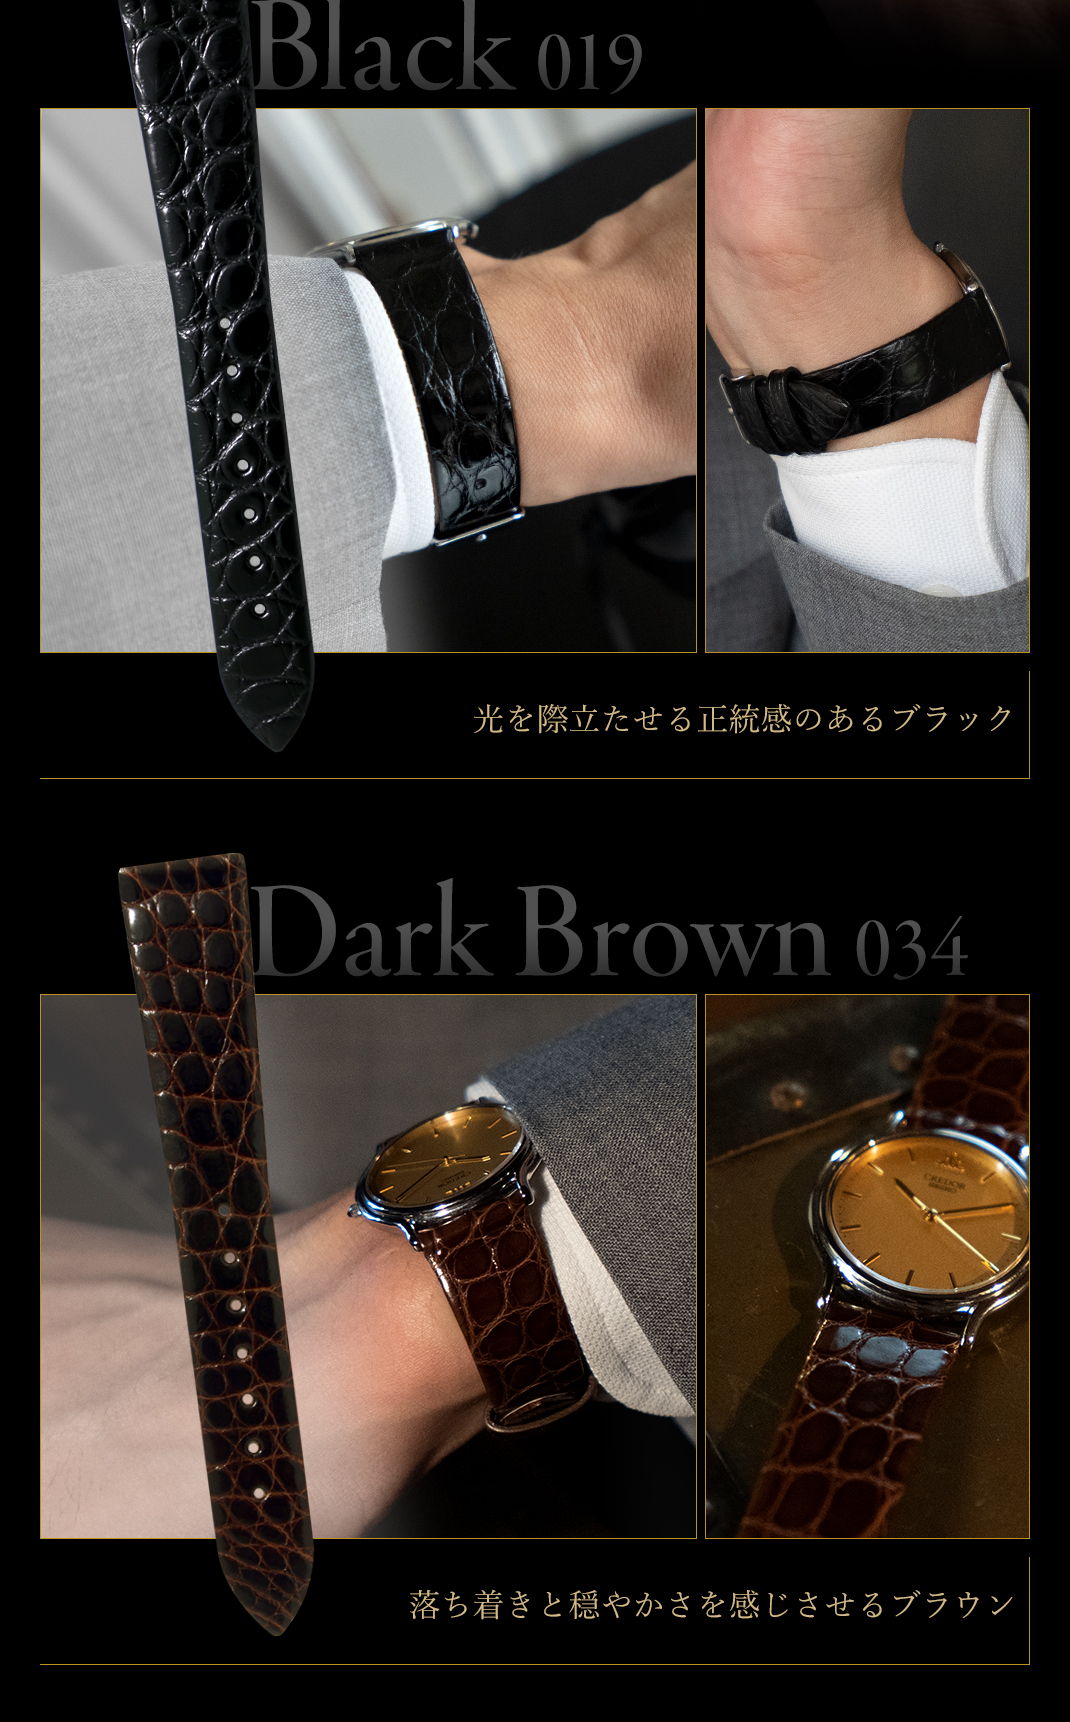 光を際立たせる正統感のあるブラック Black (019) 落ち着きと穏やかさを感じさせるブラウン Dark Brown (034)